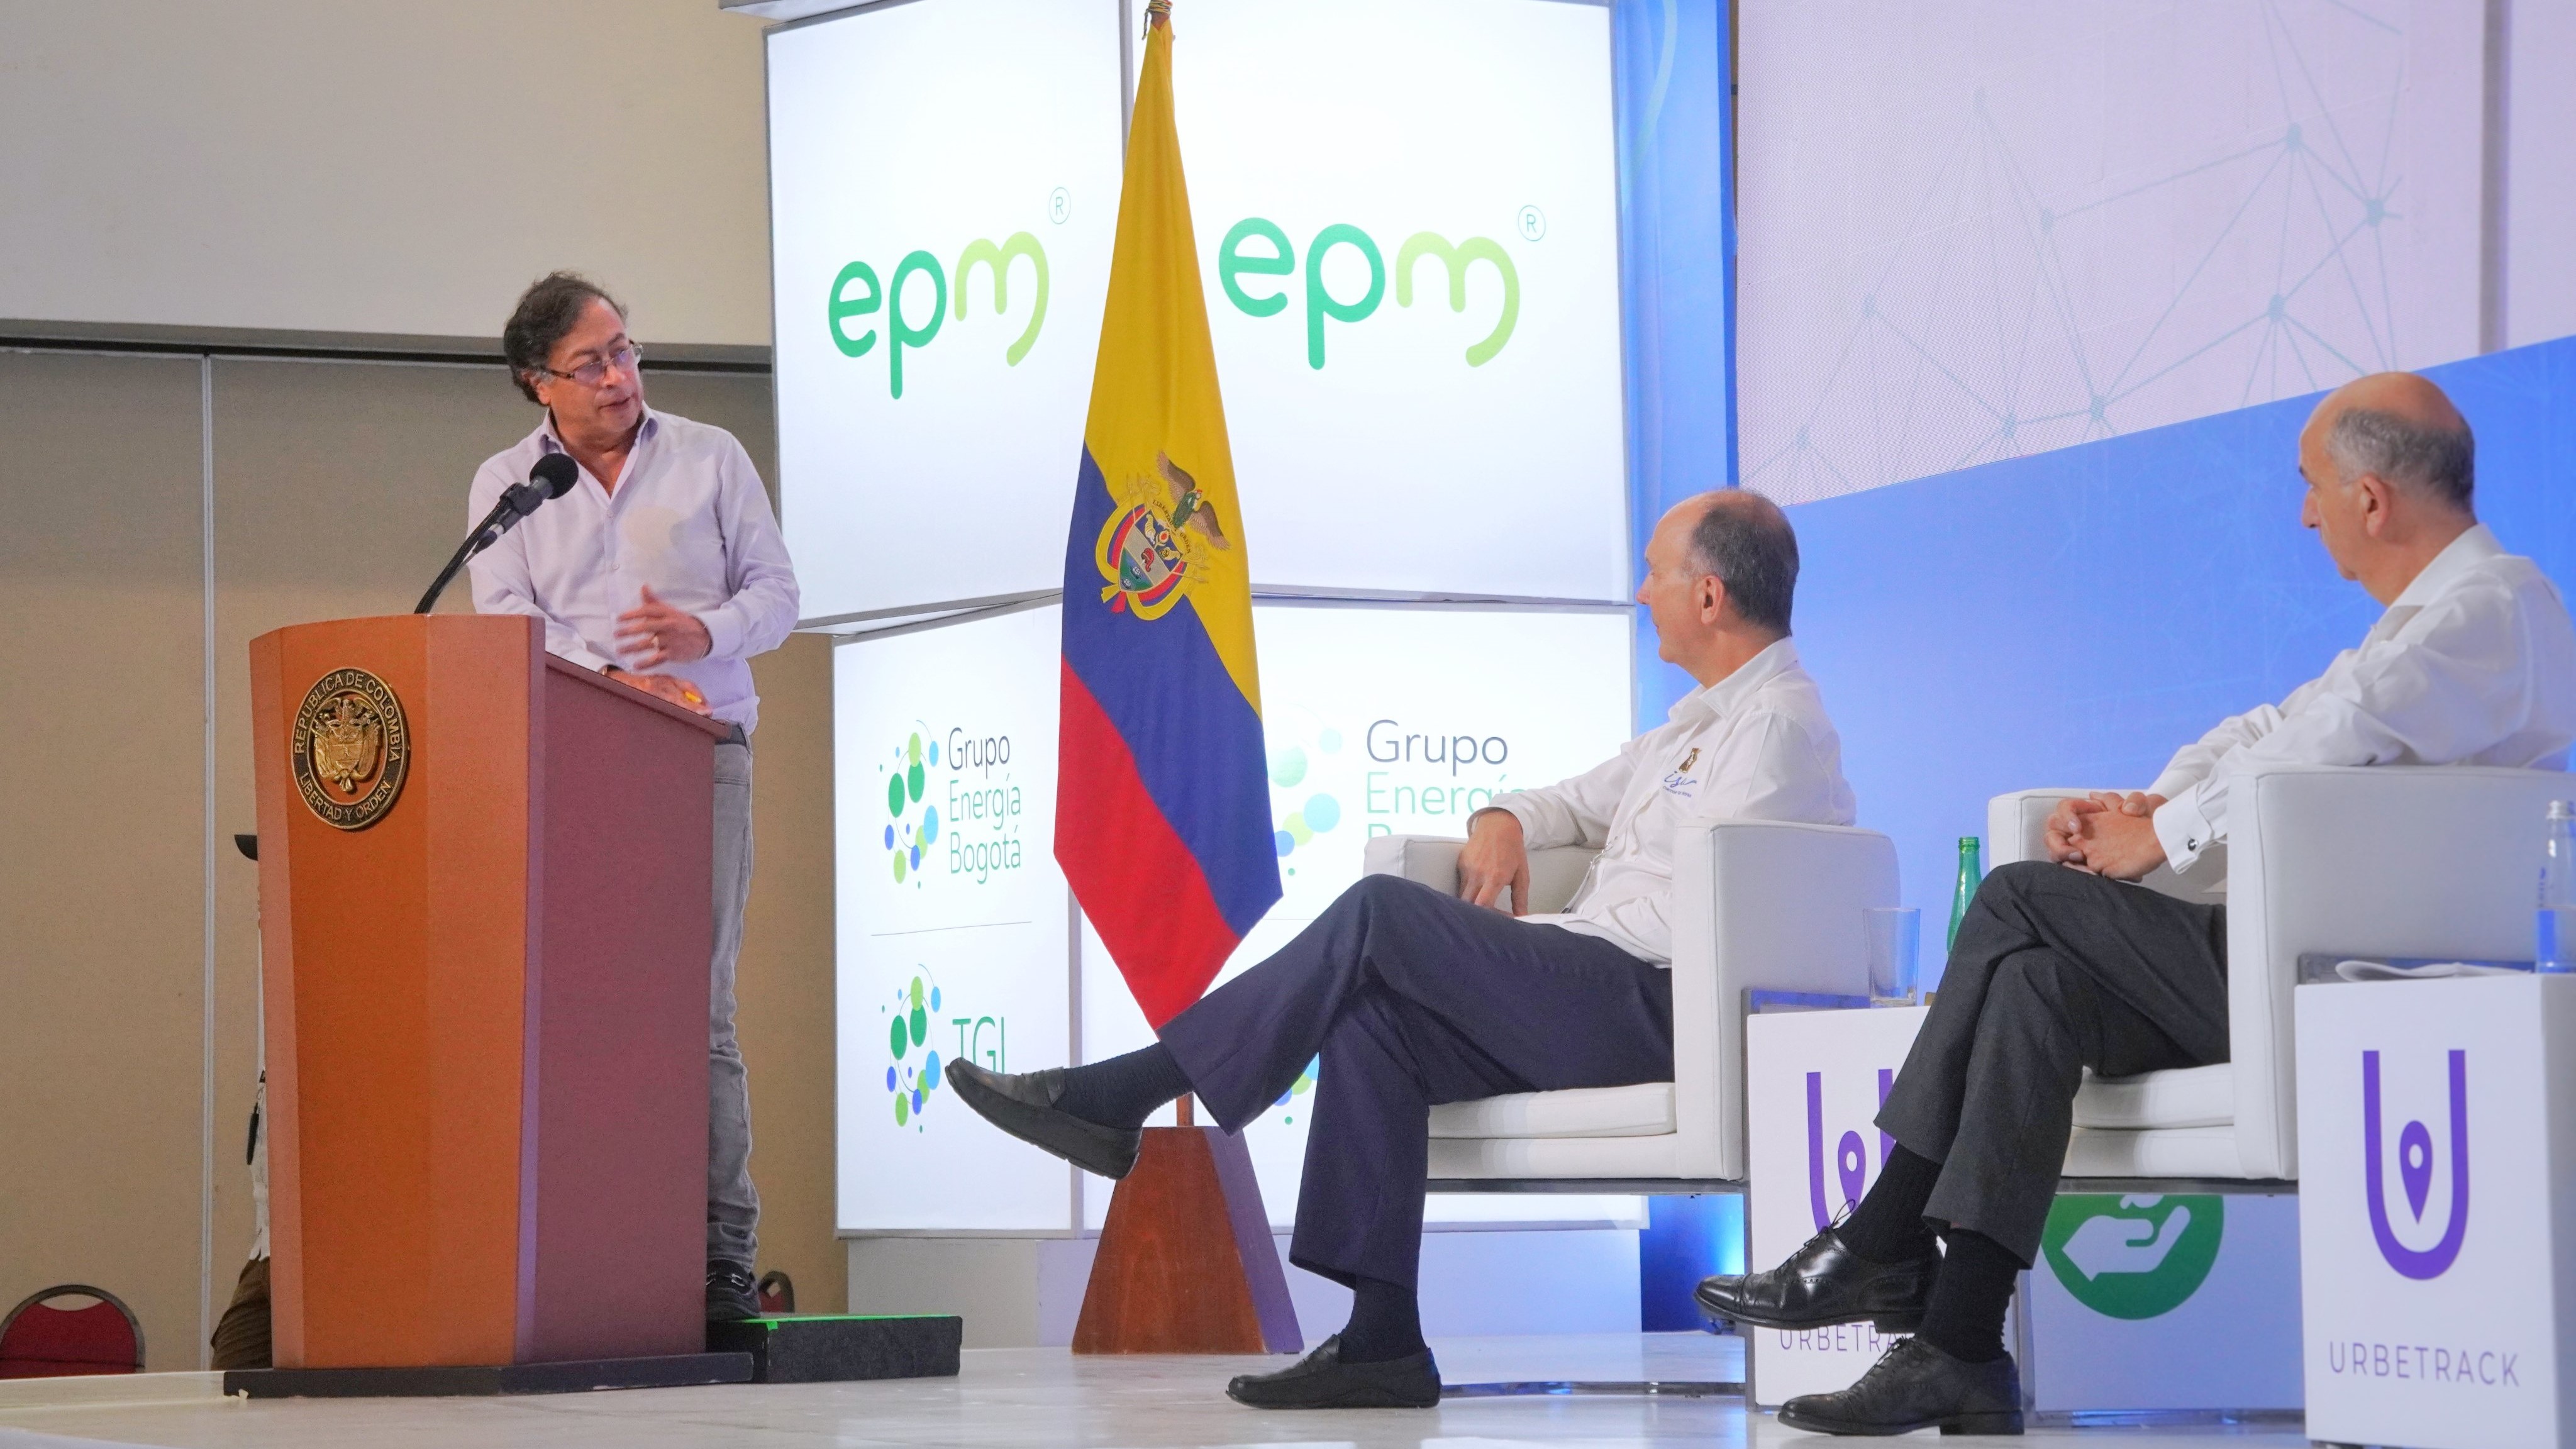 El presidente Petro advirtió que en su administración: "no vamos a estatizar los servicios públicos, vamos a entrar un nuevo componente, tanto en conectividad como en energía eléctrica y en agua potable. Ese nuevo componente se llama Comunidad Energética". Foto: Presidencia de Colombia, Twitter.